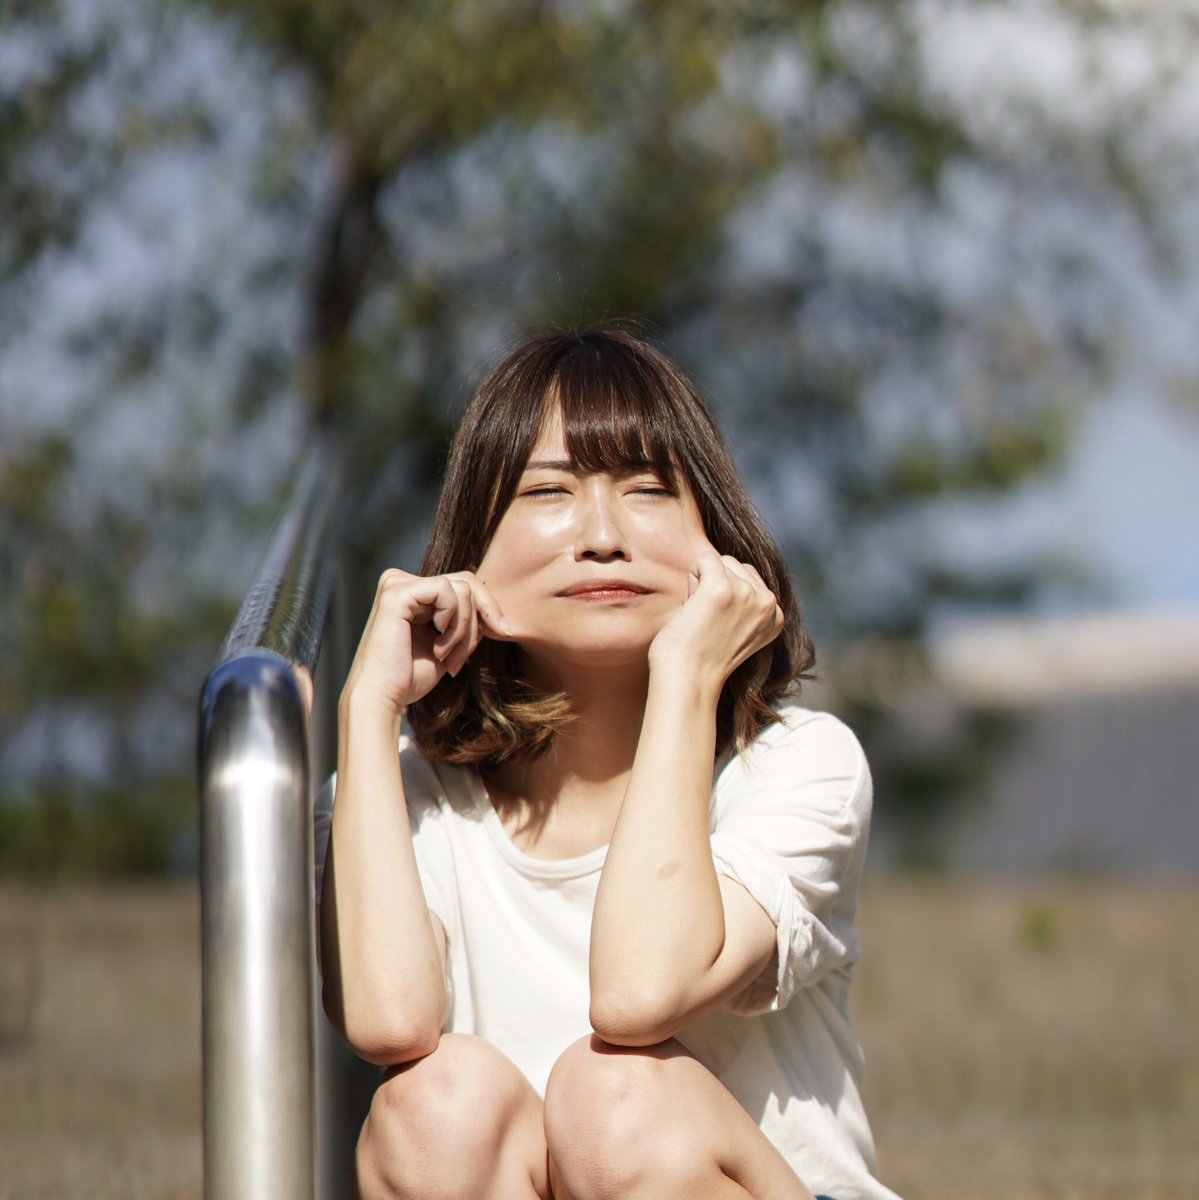 [Image] Miss Tokyo University candidate, Yukako Nakazawa, stretches her cheeks. Do you like this kind of child?